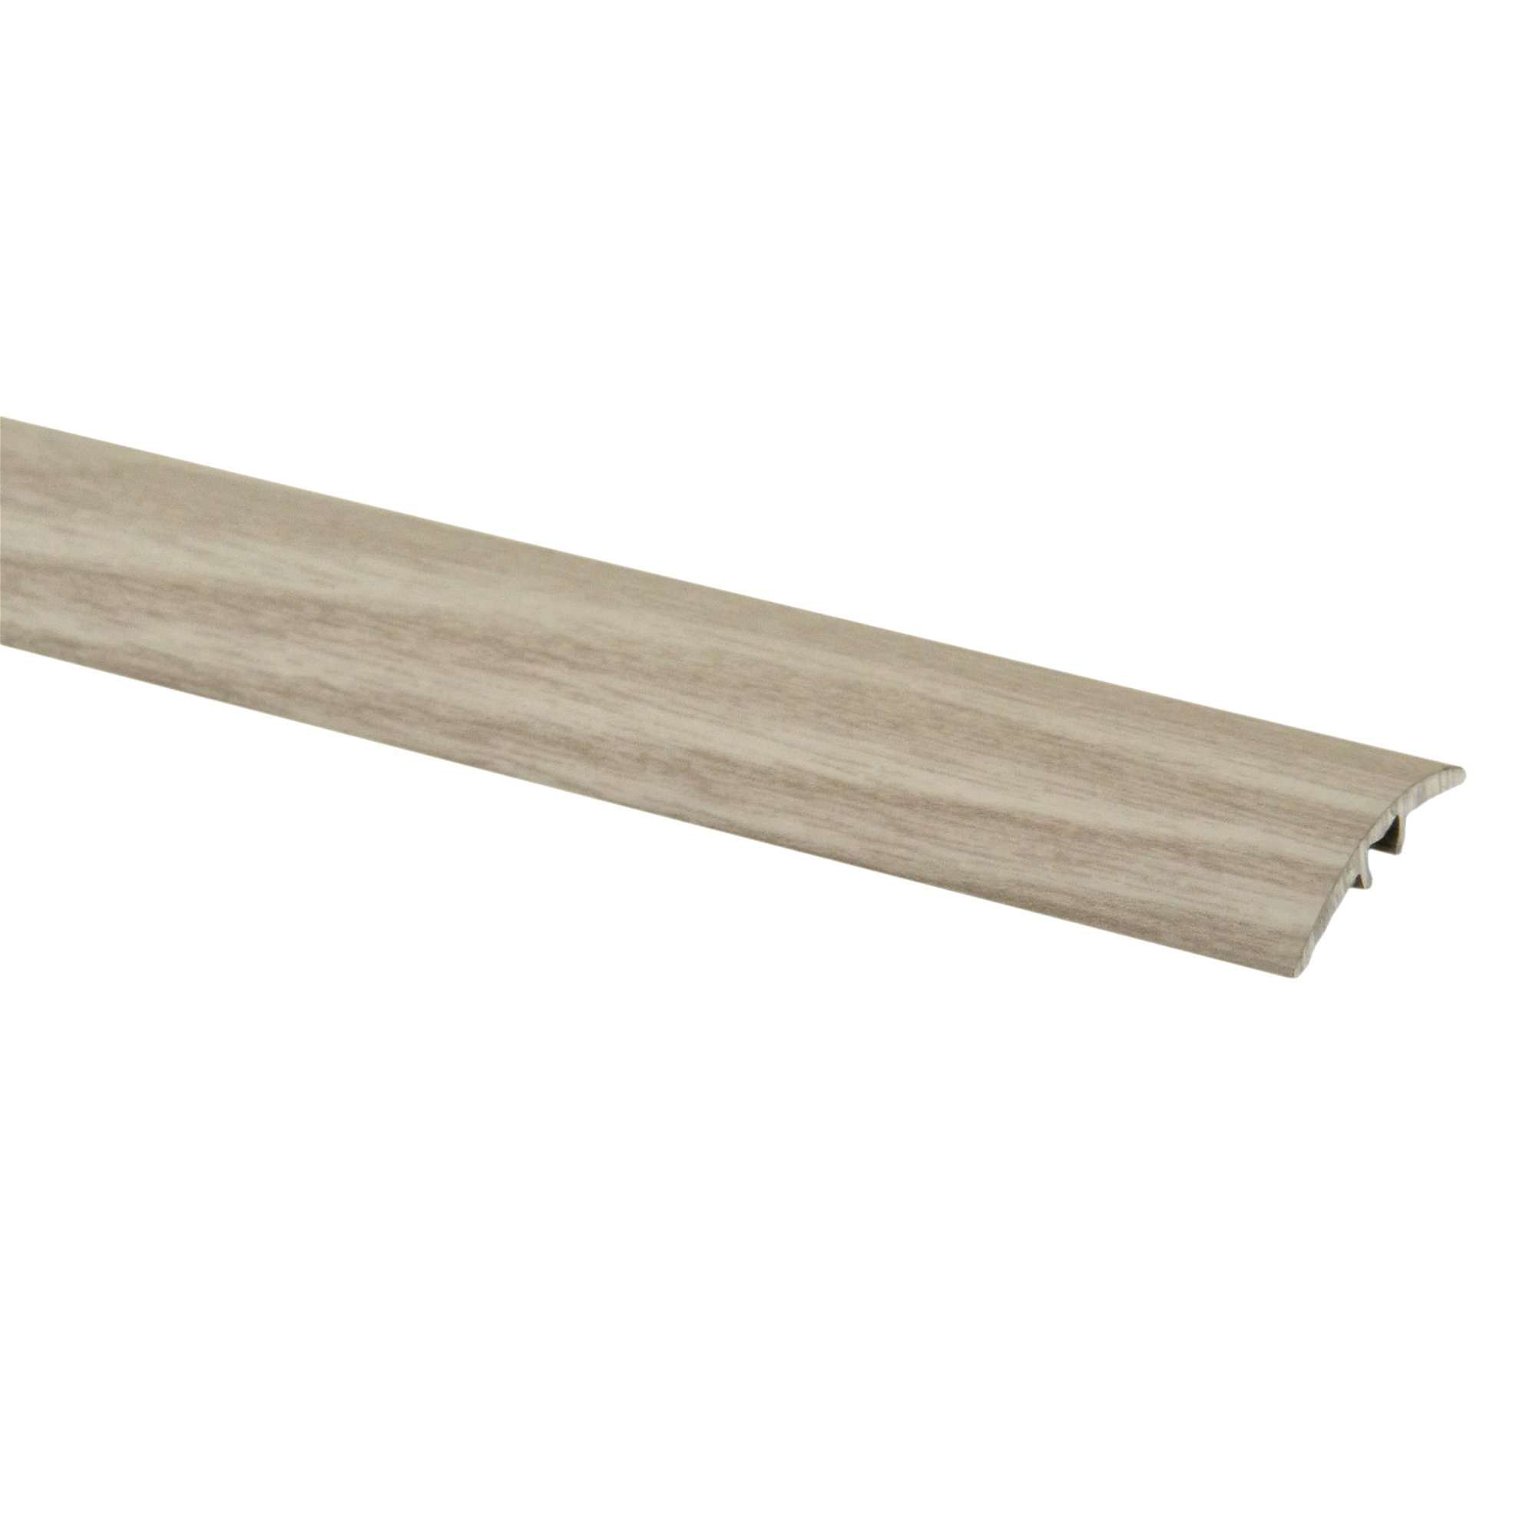 Aliumininė grindų juostelė PR3K W1, baltojo ąžuolo sp., 30 mm pločio, 93 cm ilgio